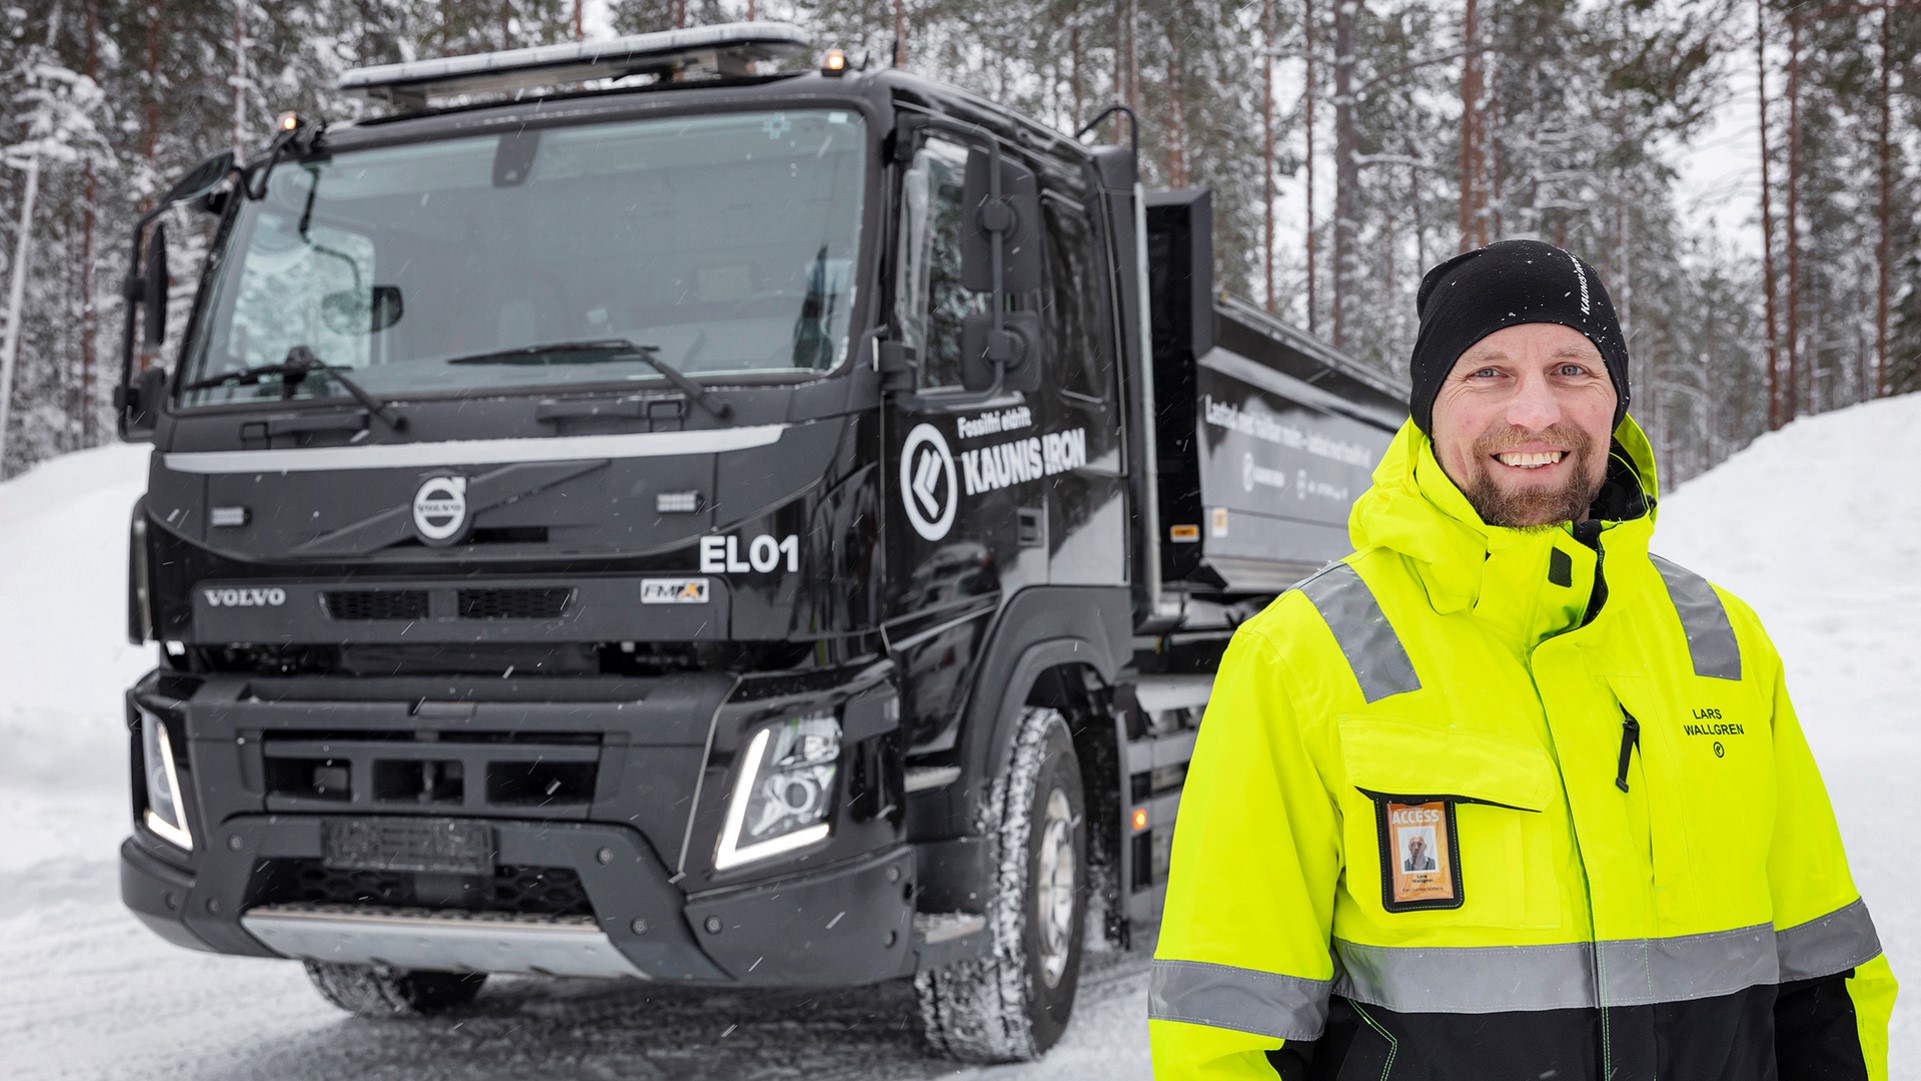 Testung eines Elektro-LKW durch Kaunis, Schweden